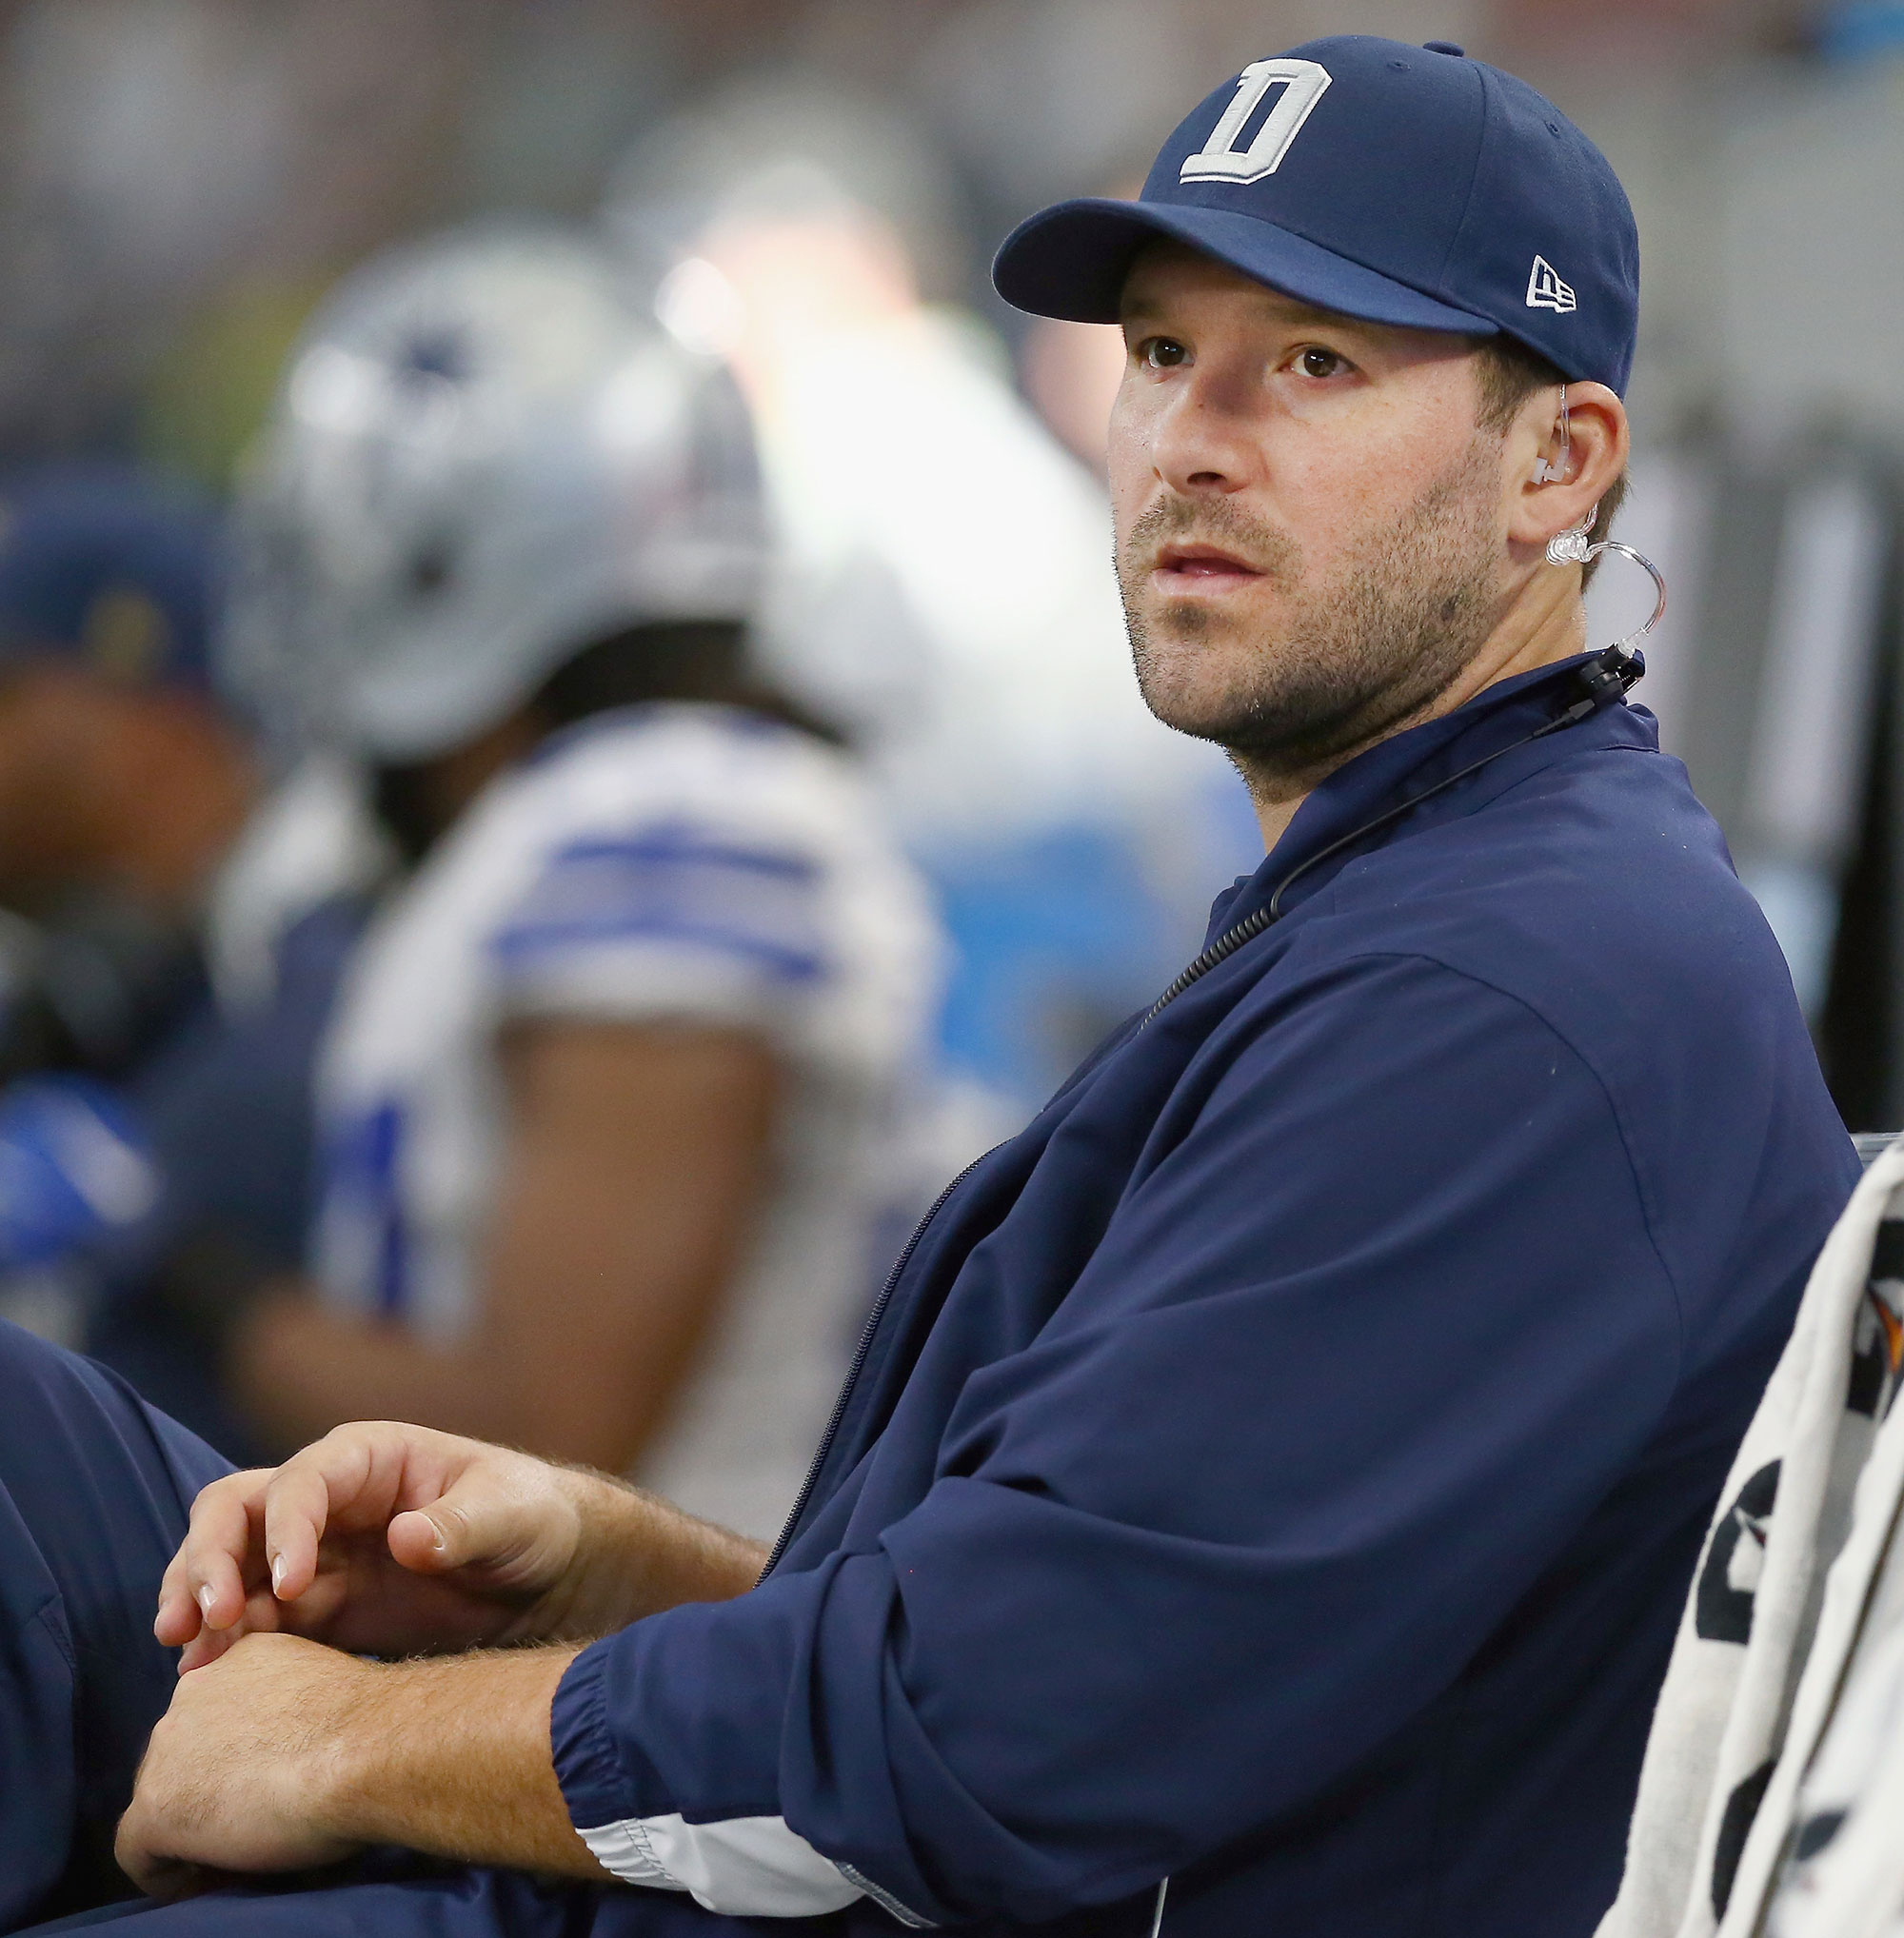 Tony Romo Looks Heavier at Cowboys Training Camp, Twitter Reacts image